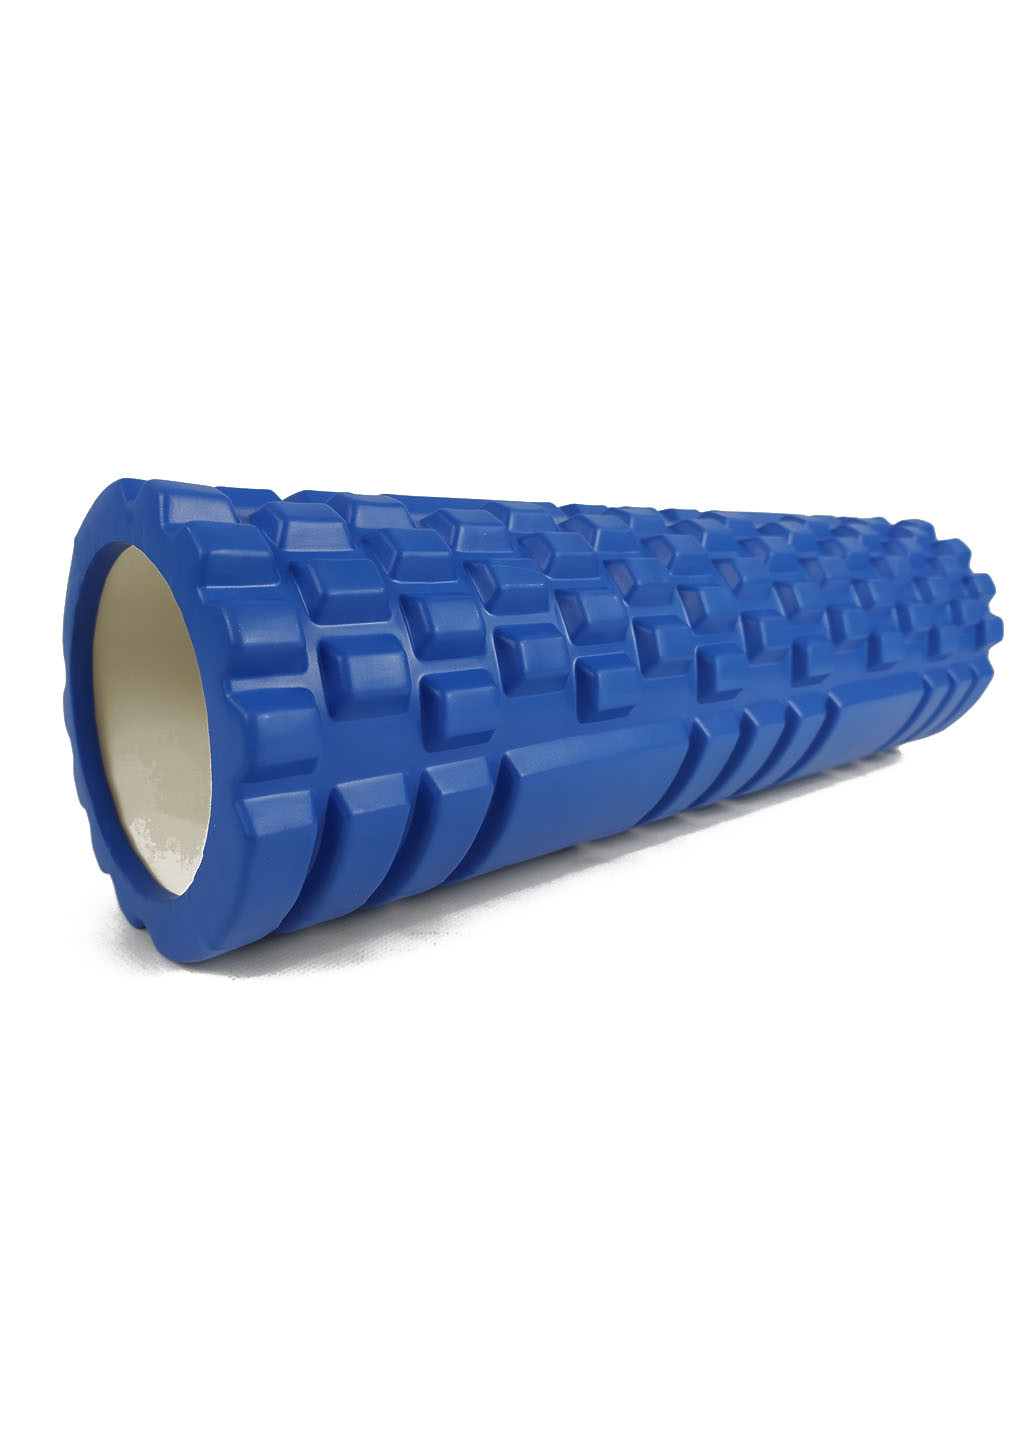 Масажний ролик Grid Roller v2.1 45 см синій (ролер, валик, циліндр) EasyFit (237657515)